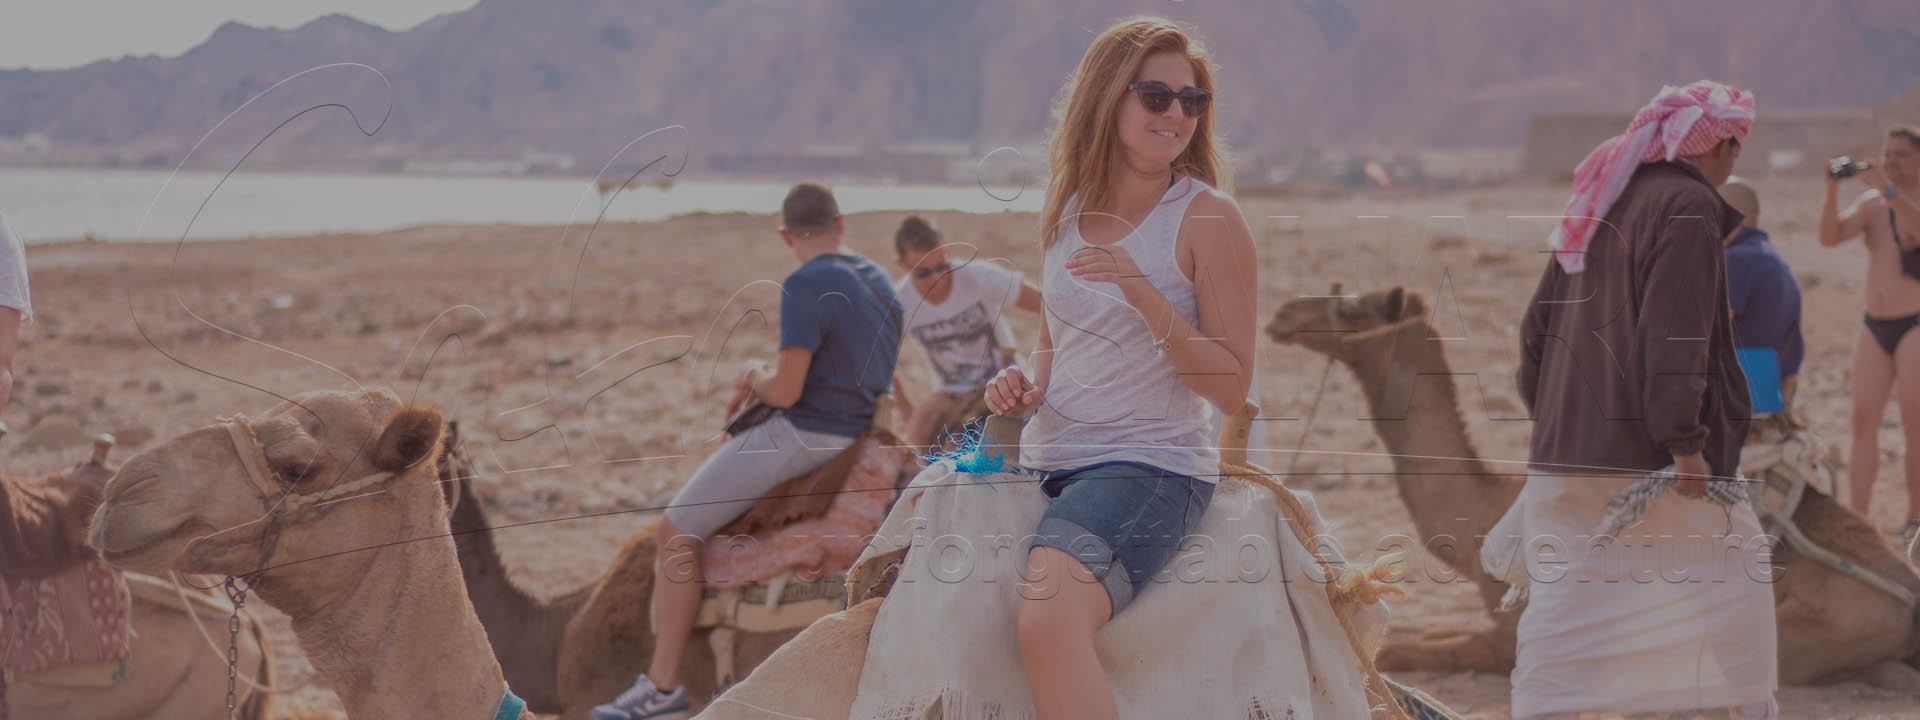 Viajes de safari Sharm El Sheikh